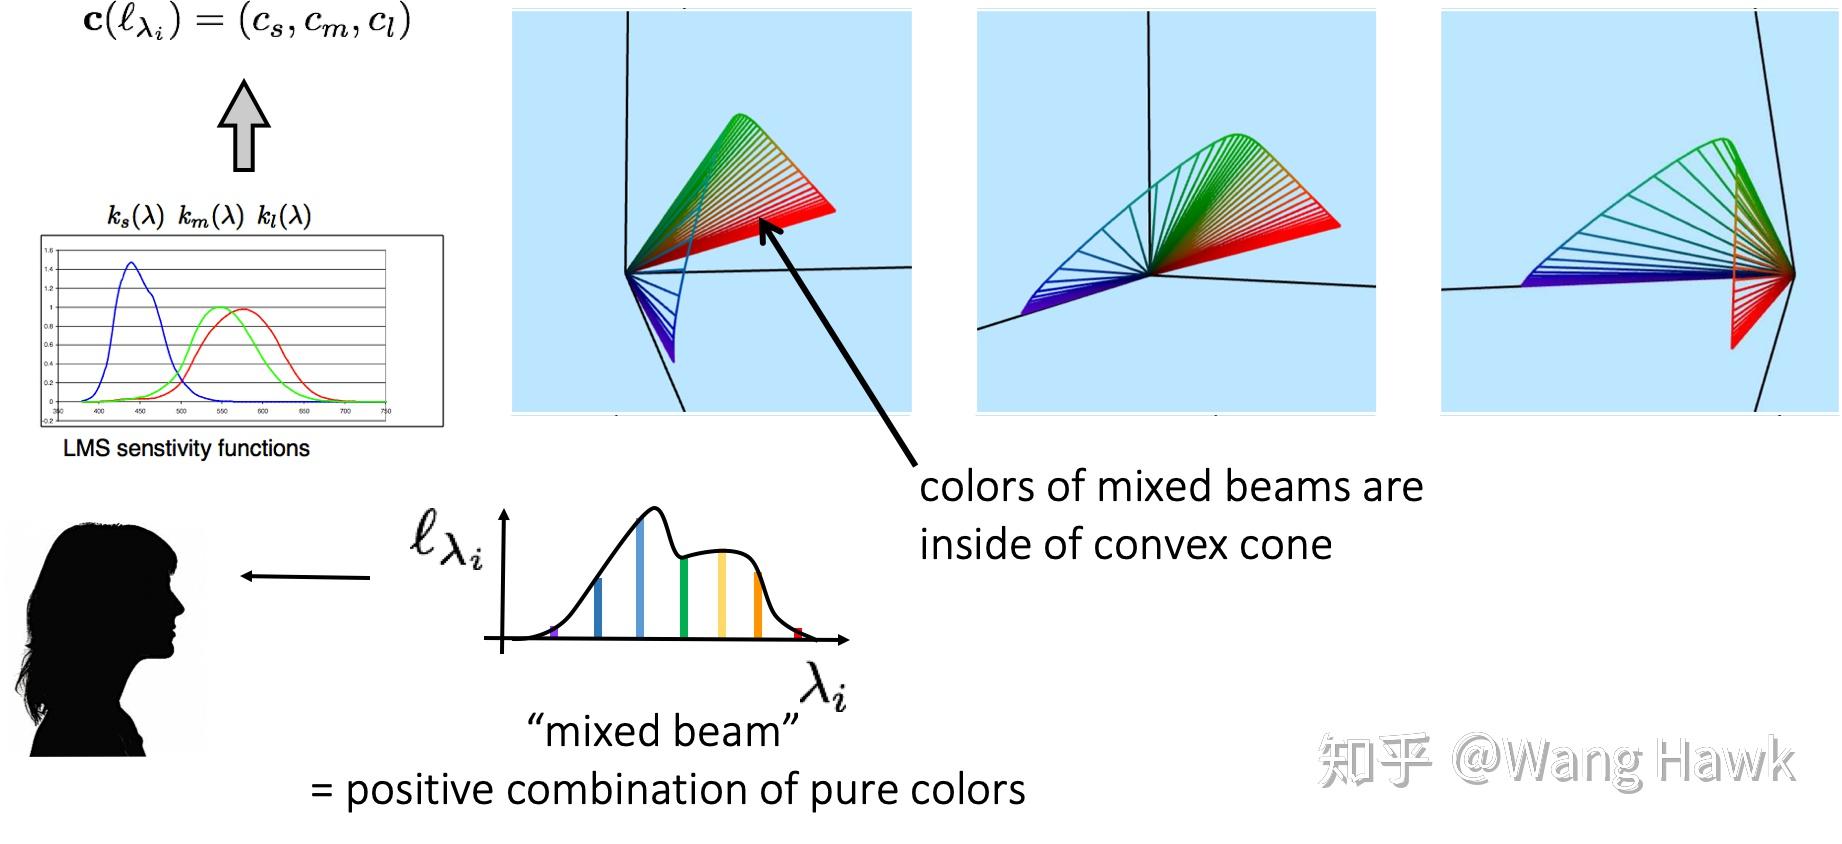 convex cone图片